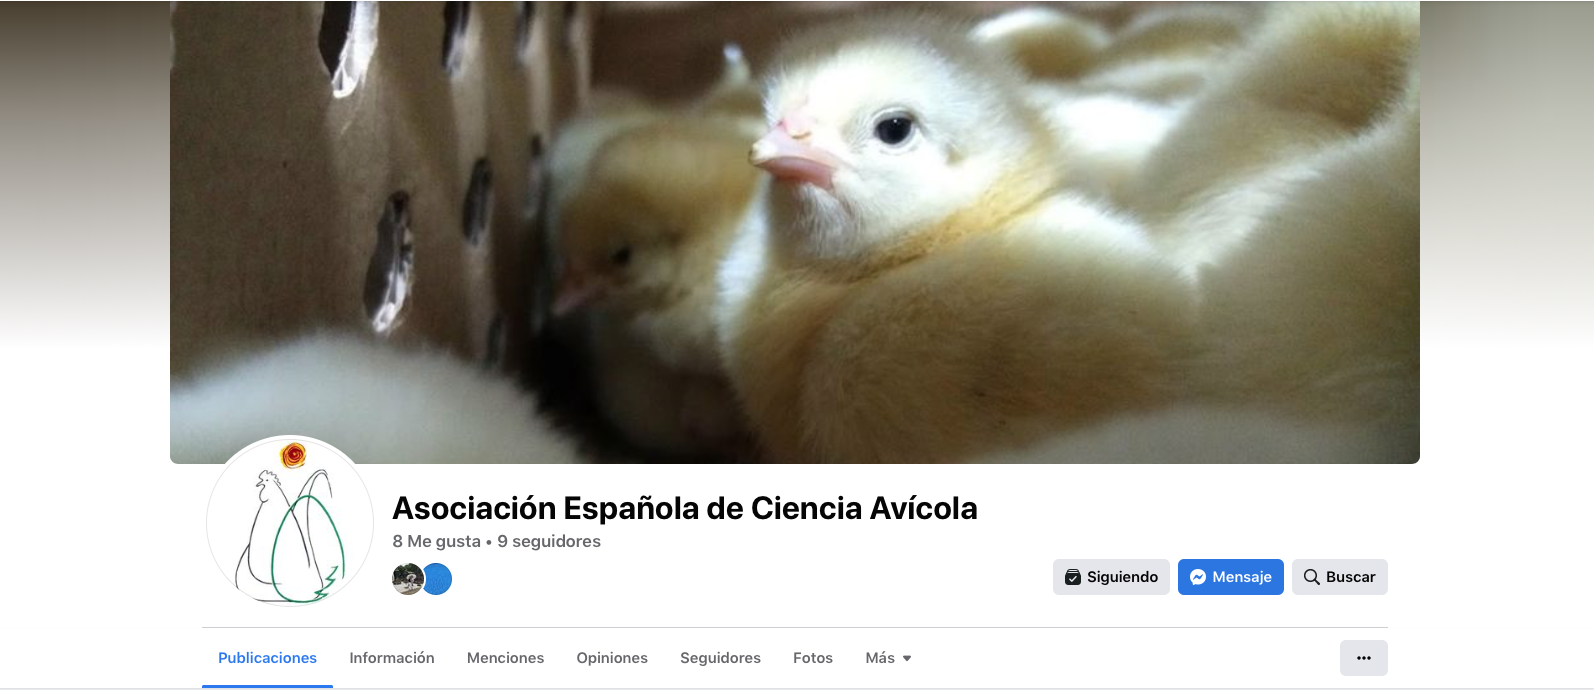 Nueva página de empresa en Facebook de la Asociación Española de Ciencia Avícola